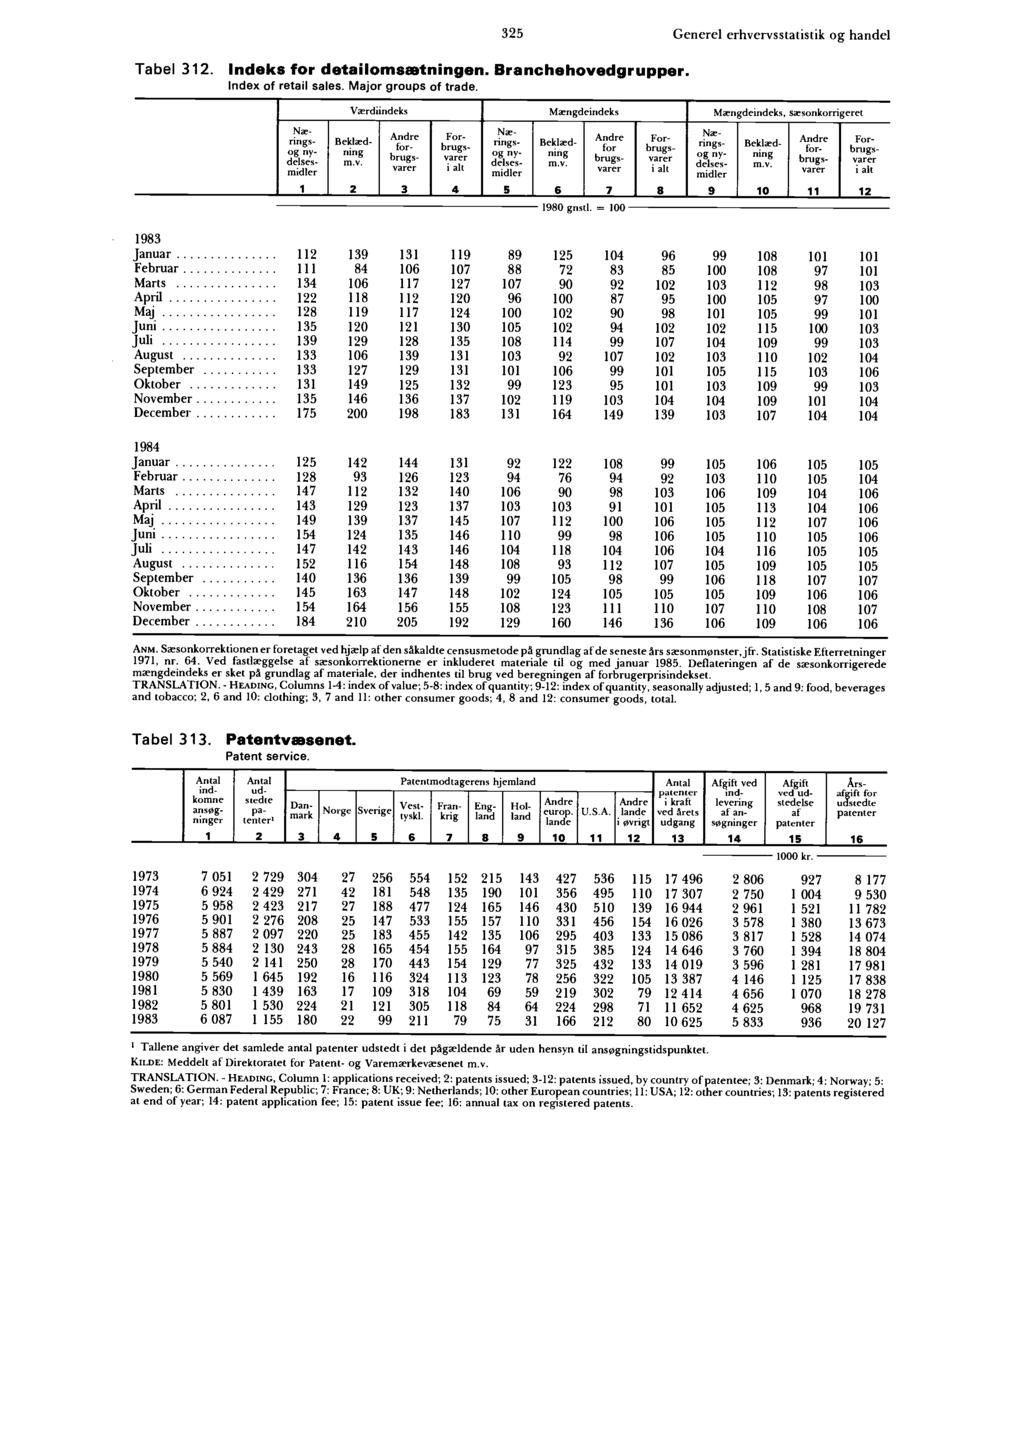 325 Tabel 312. Indeks for detailomsætningen. Branchehovedgrupper. Index of retail sales. Major groups of trade.